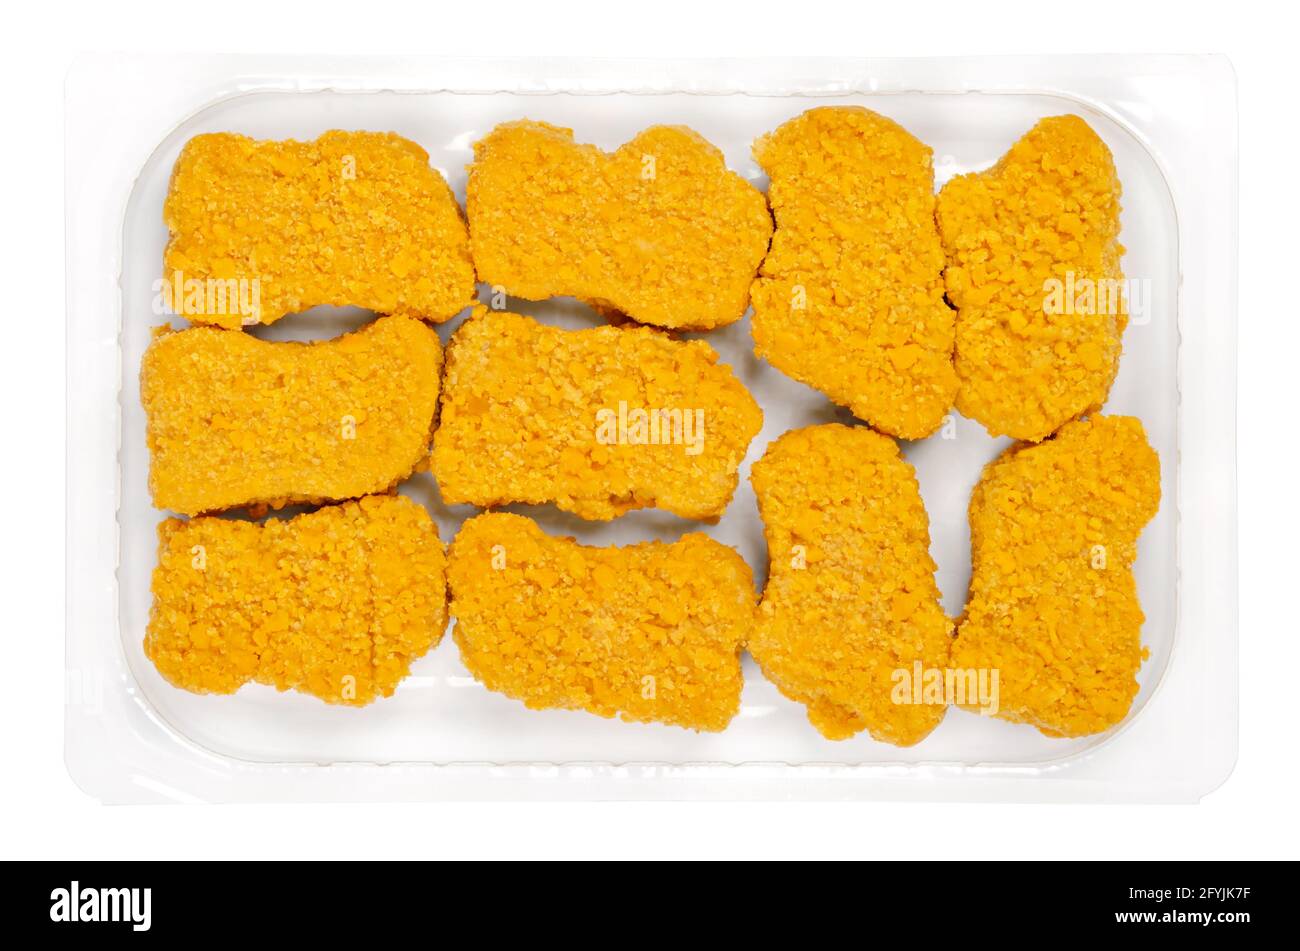 Nuggets veganos, listos para freír en un recipiente de plástico transparente. Nuggets veganos, a base de proteína de soja y trigo, en breadeo crujiente, fritos y cocidos. Foto de stock